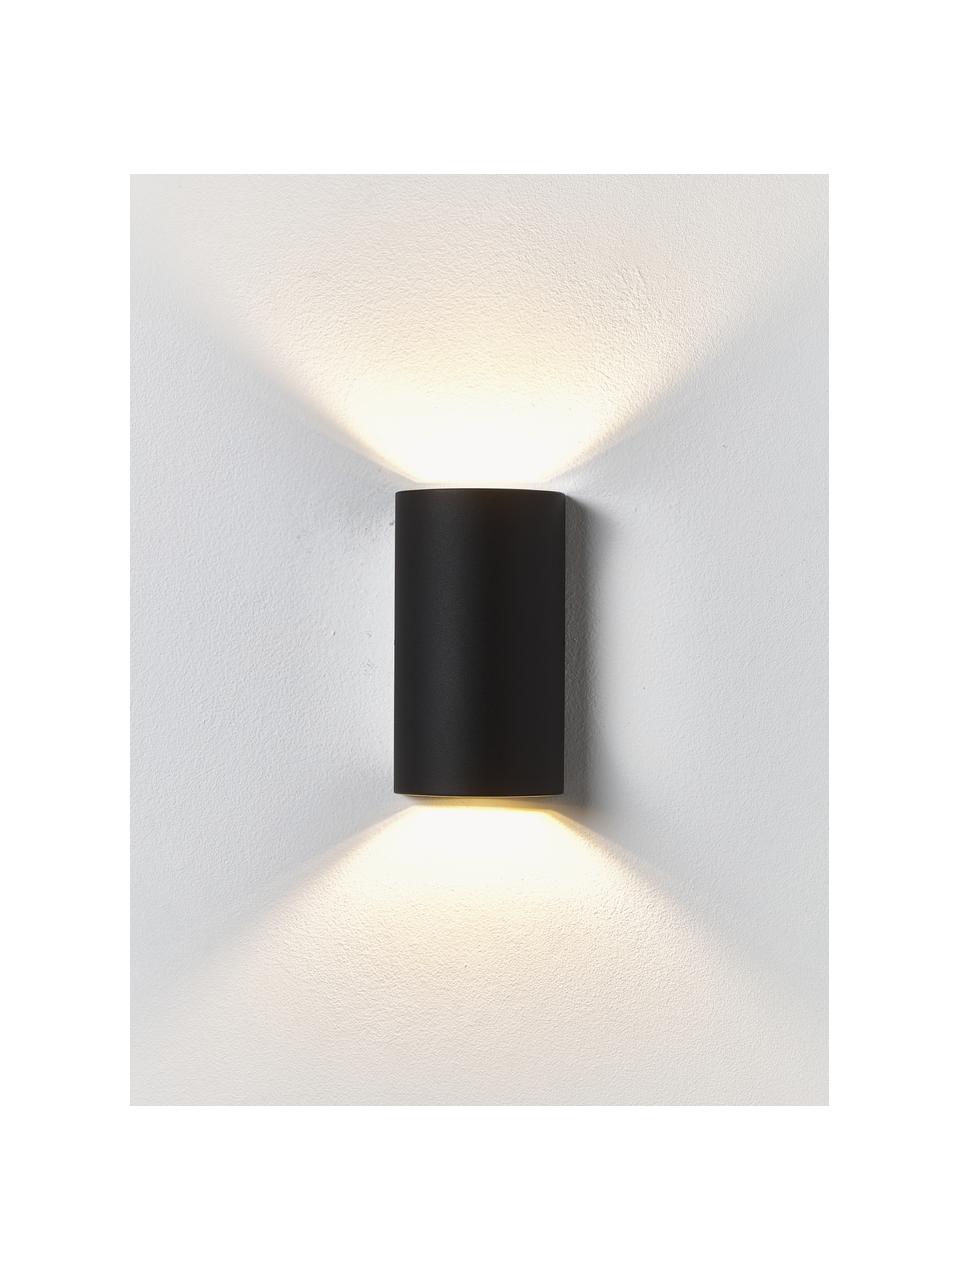 Outdoor wandlamp Rold, Lamp: gecoat metaal, Diffuser: glas, Zwart, Ø 9 x H 16 cm